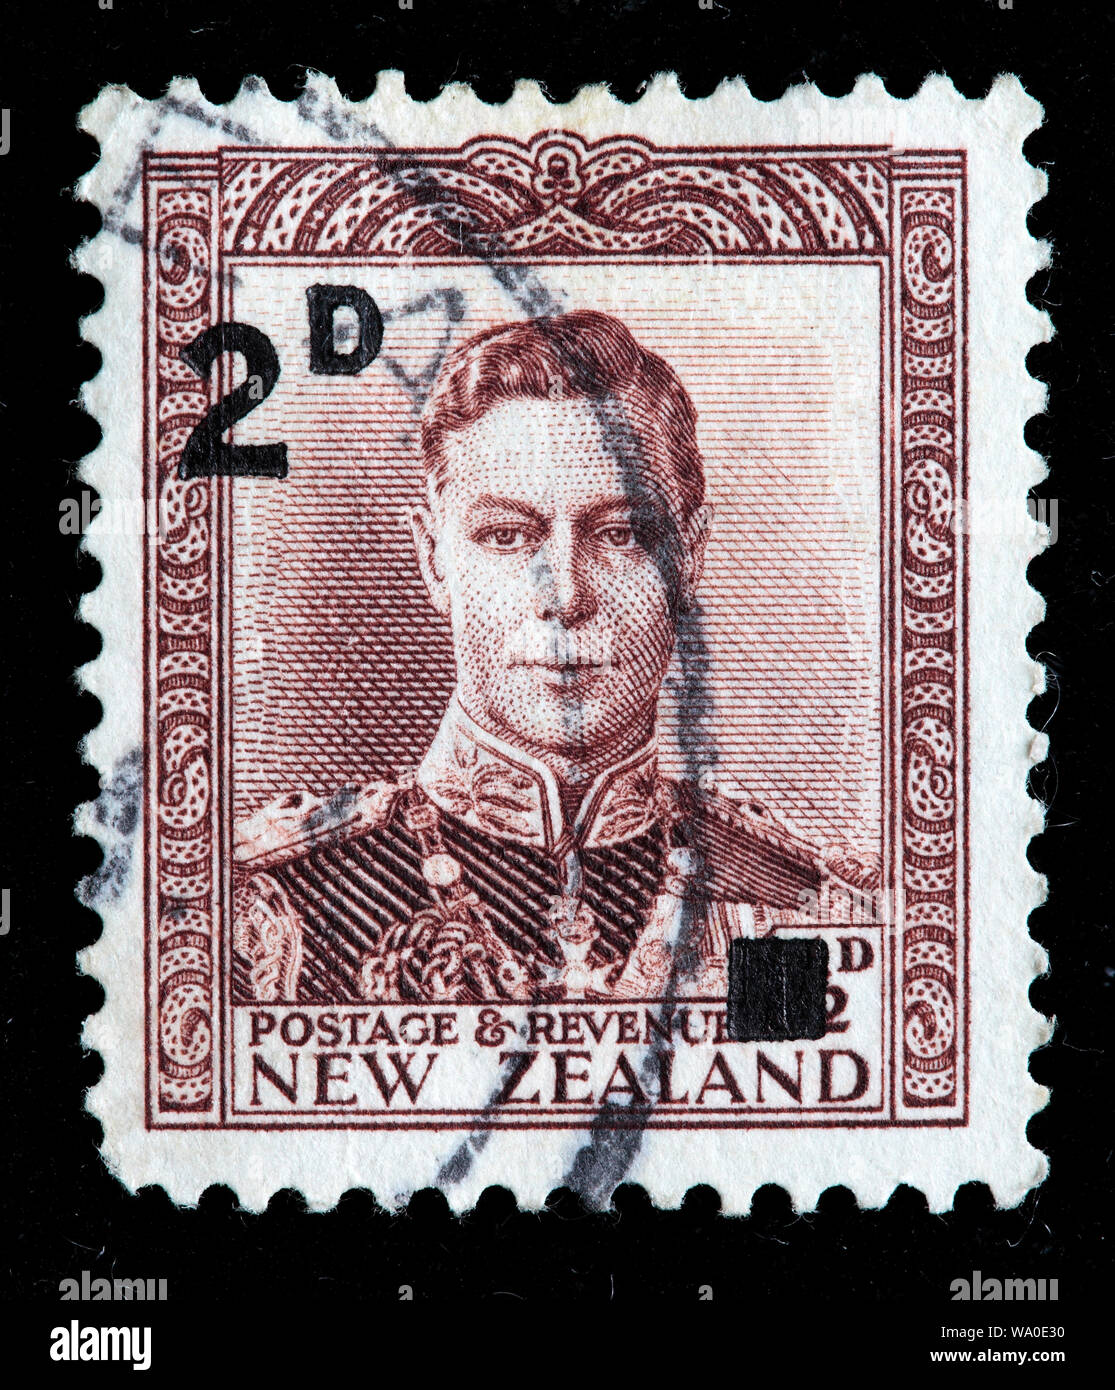 Le roi George VI (1936-1952), timbre-poste, Nouvelle-Zélande, 1938 Banque D'Images